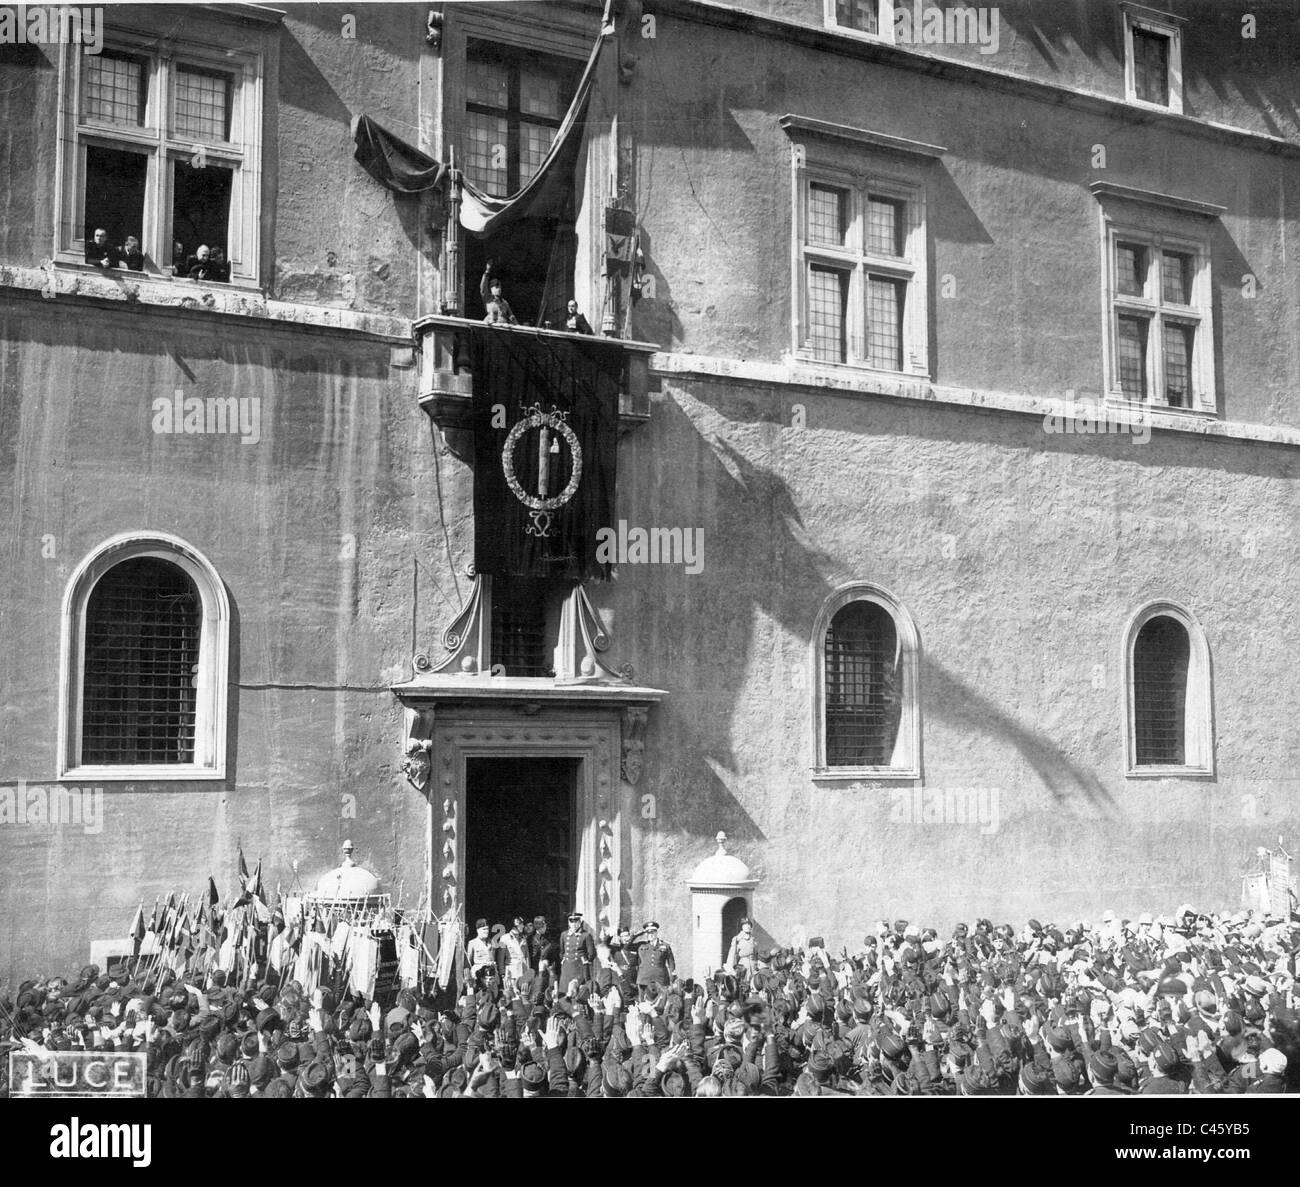 Benito Mussolini on the balcony of the Palazzo Venezia in Rome, 1937 Stock Photo